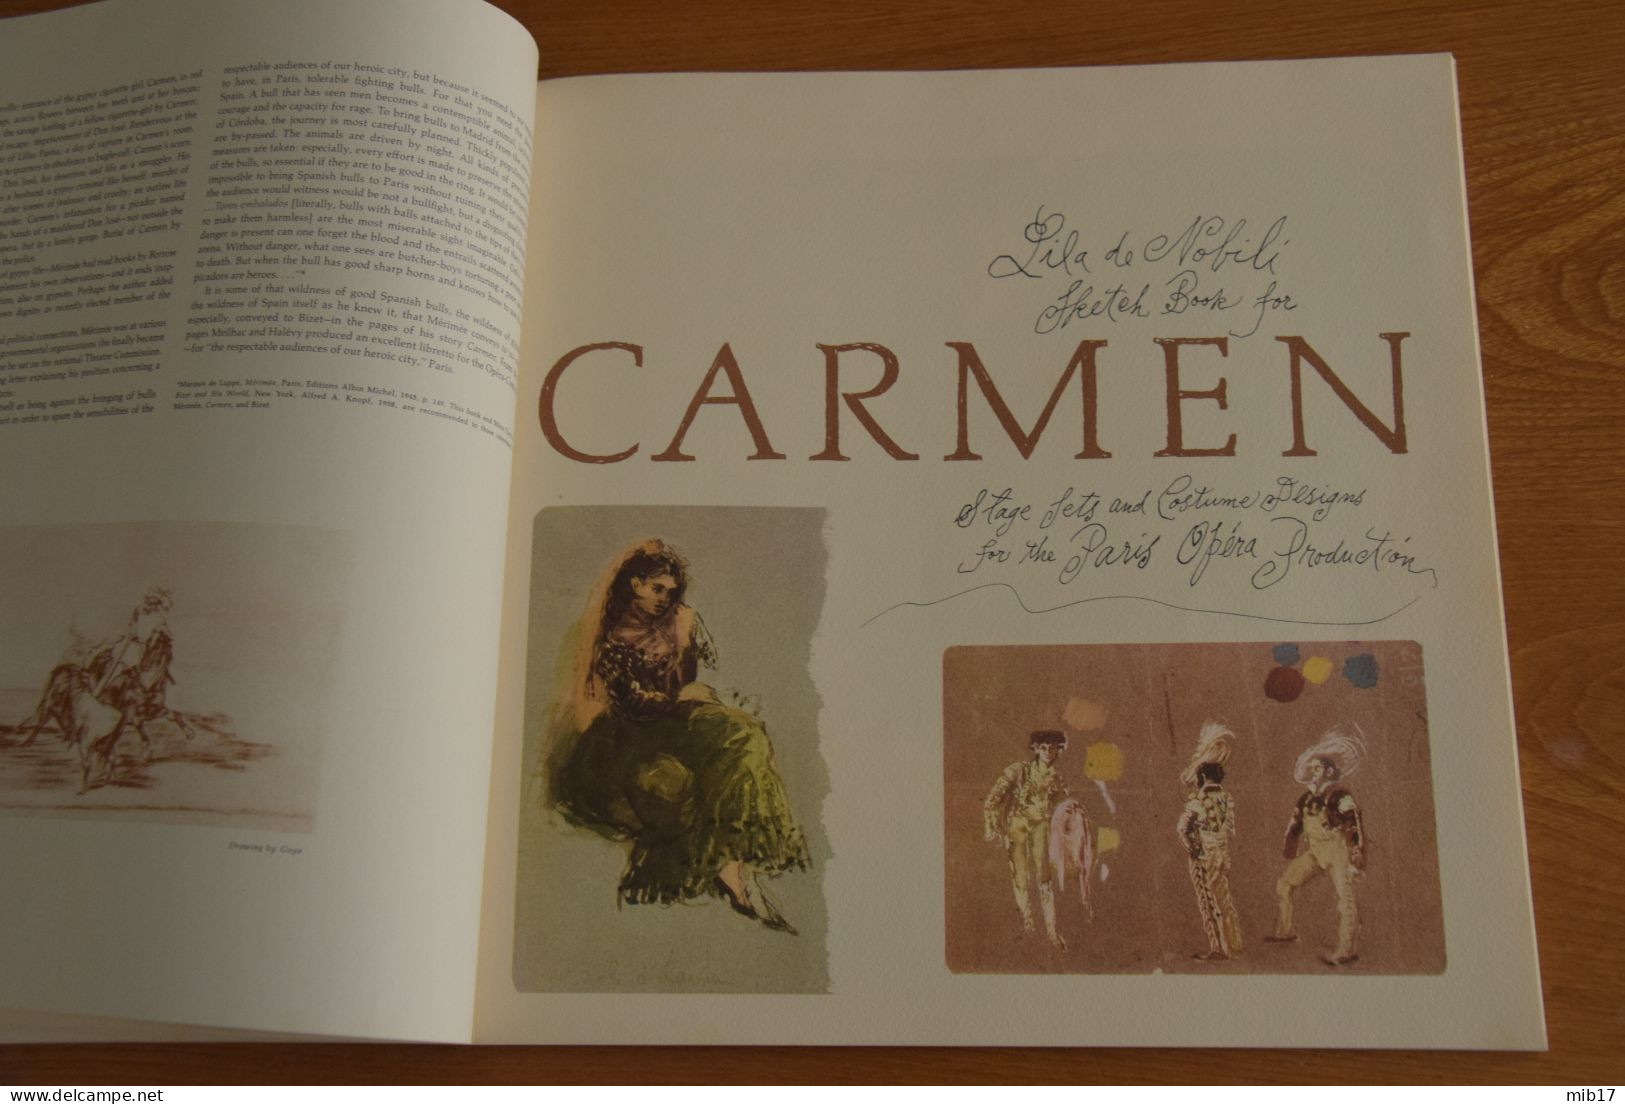 Album 3 disques RCA avec livre en Anglais, parole des actes en Français et Anglais- Carmen VON KARAJAN